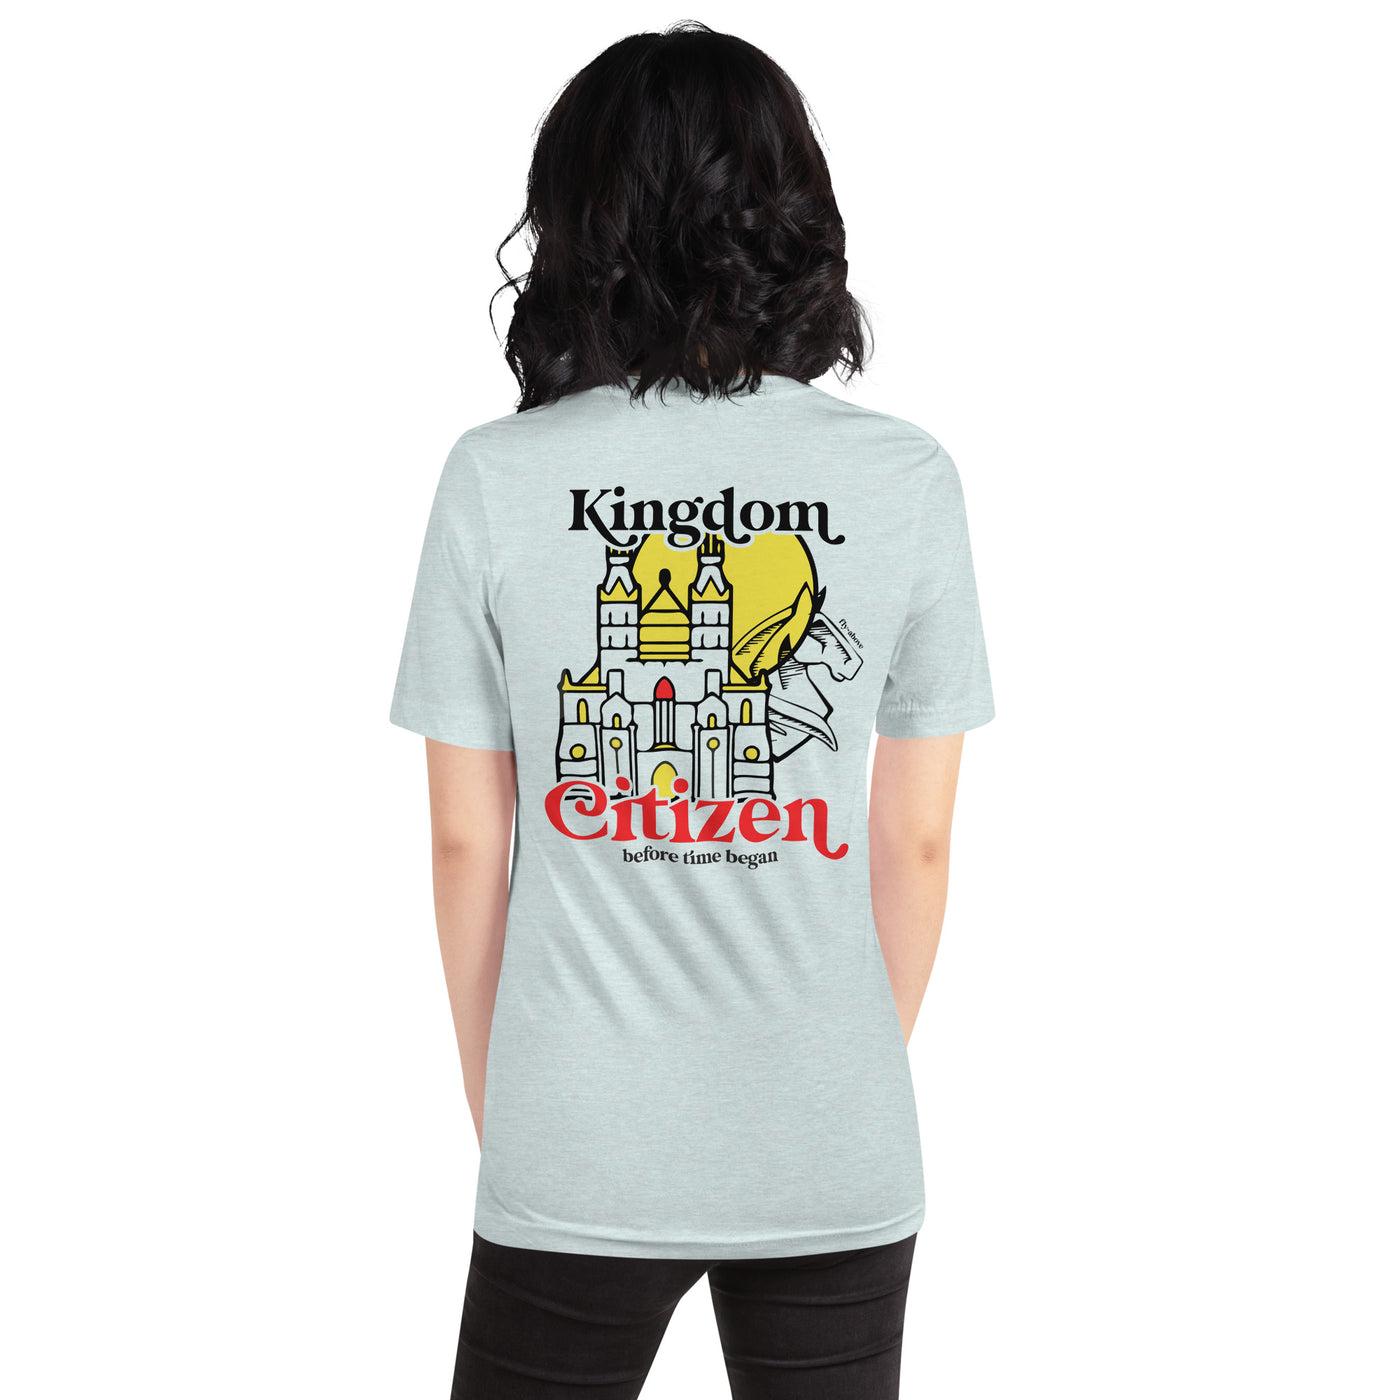 Kingdom Citizen Shirt